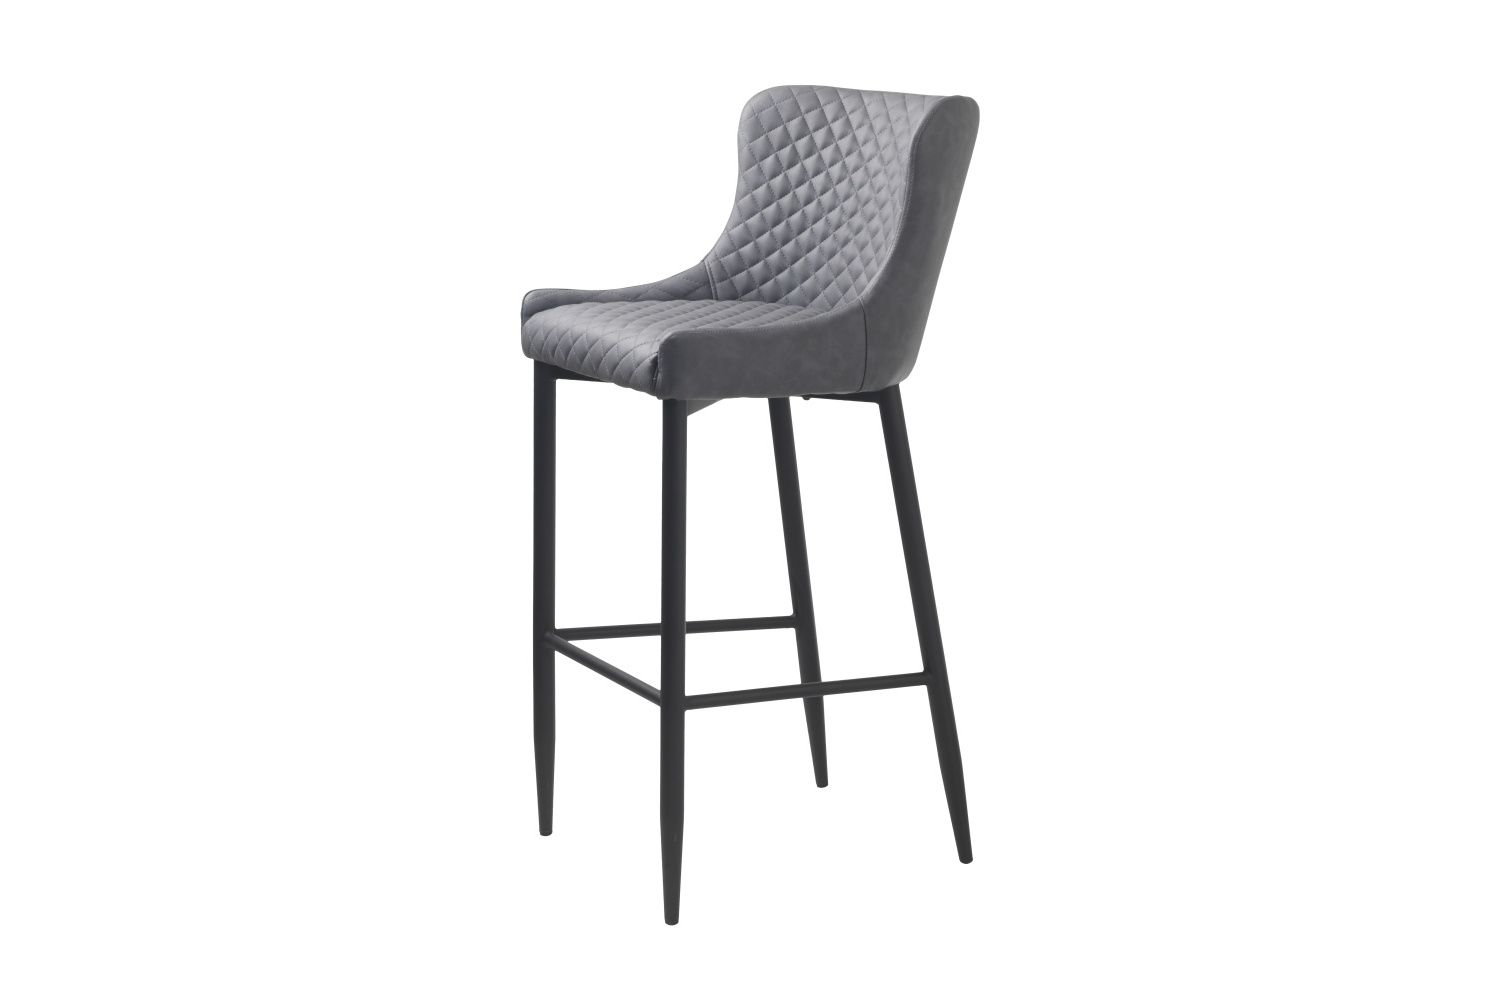 Furniria Dizajnová barová stolička Hallie sivá